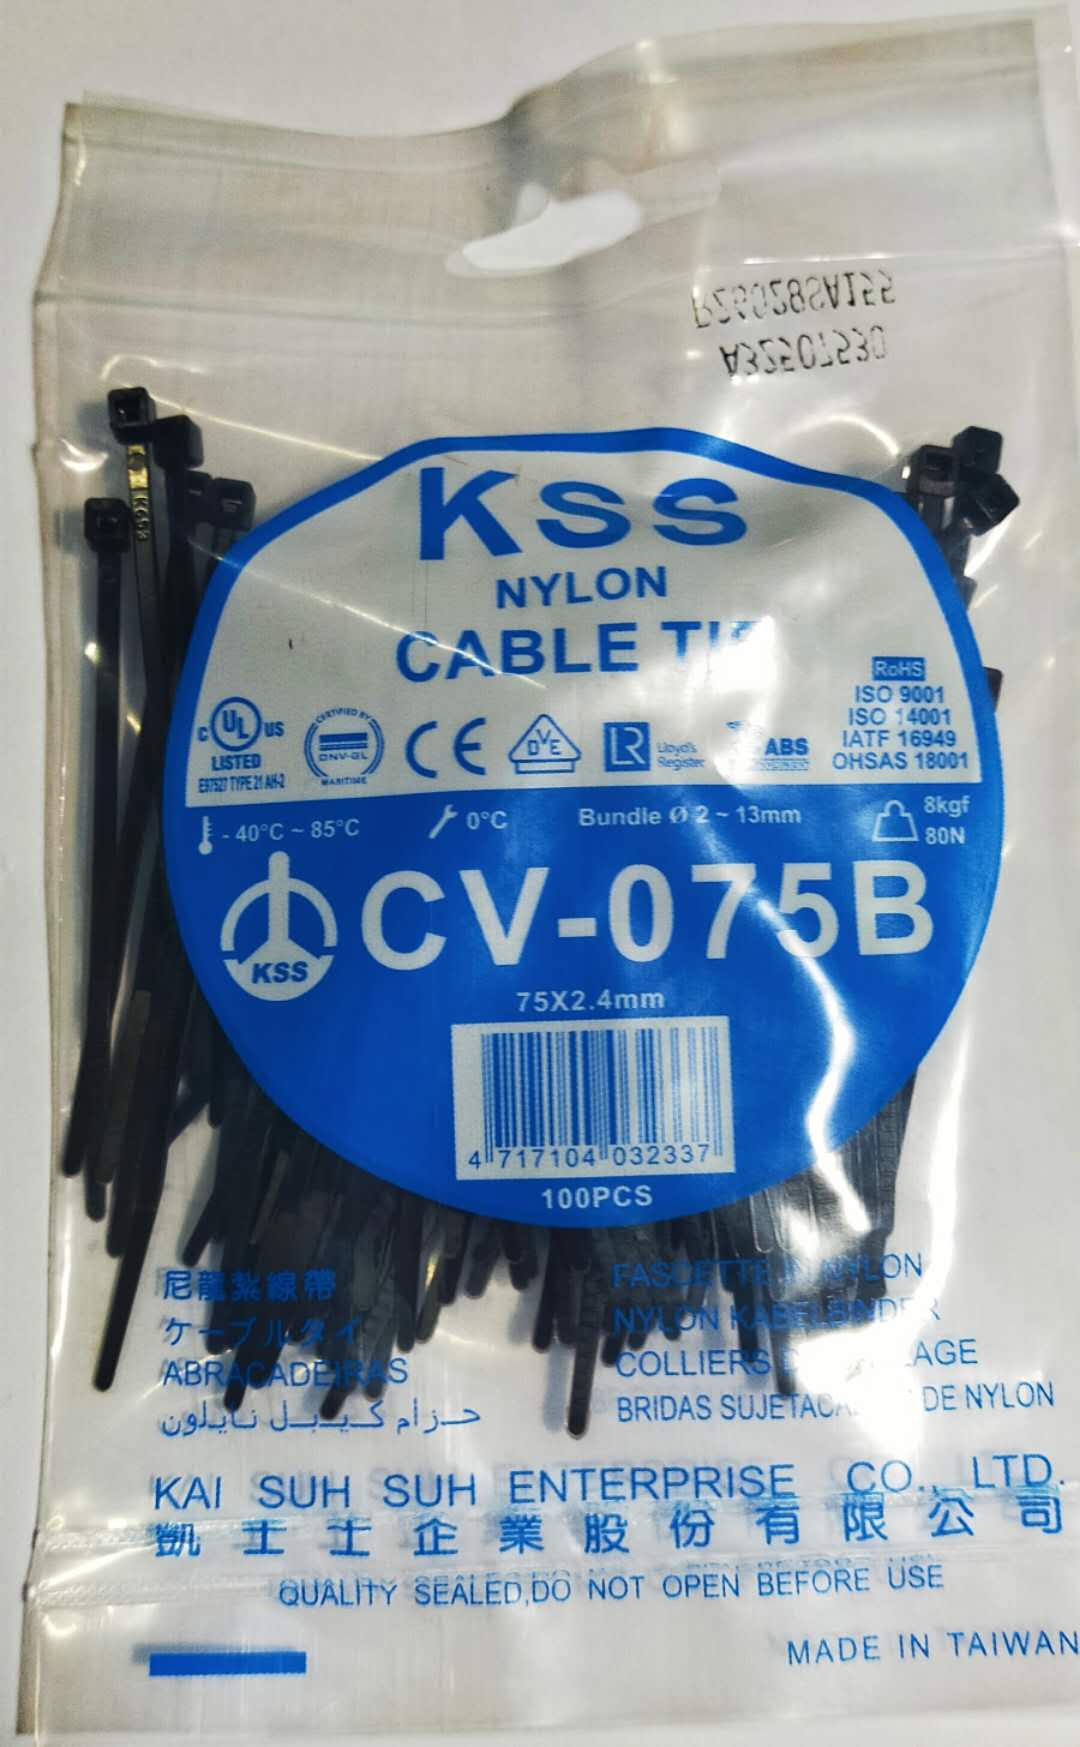 Cable tie KSS CV-075B (75mm x 2.4mm) - Black 100pcs